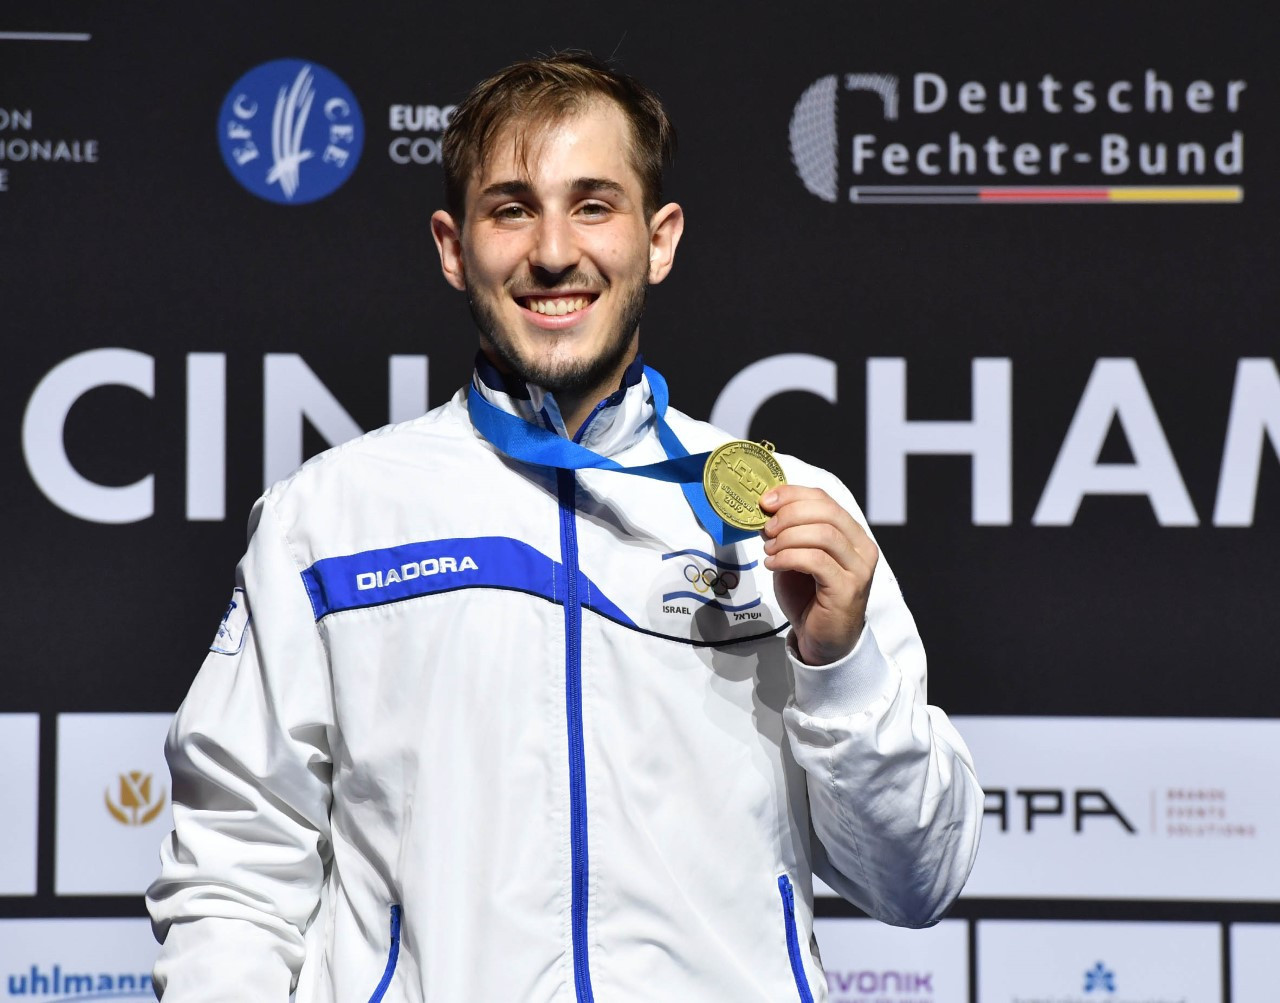 Di Francesca wins fifth European Fencing Championships foil title as Freilich takes shock men's épée victory